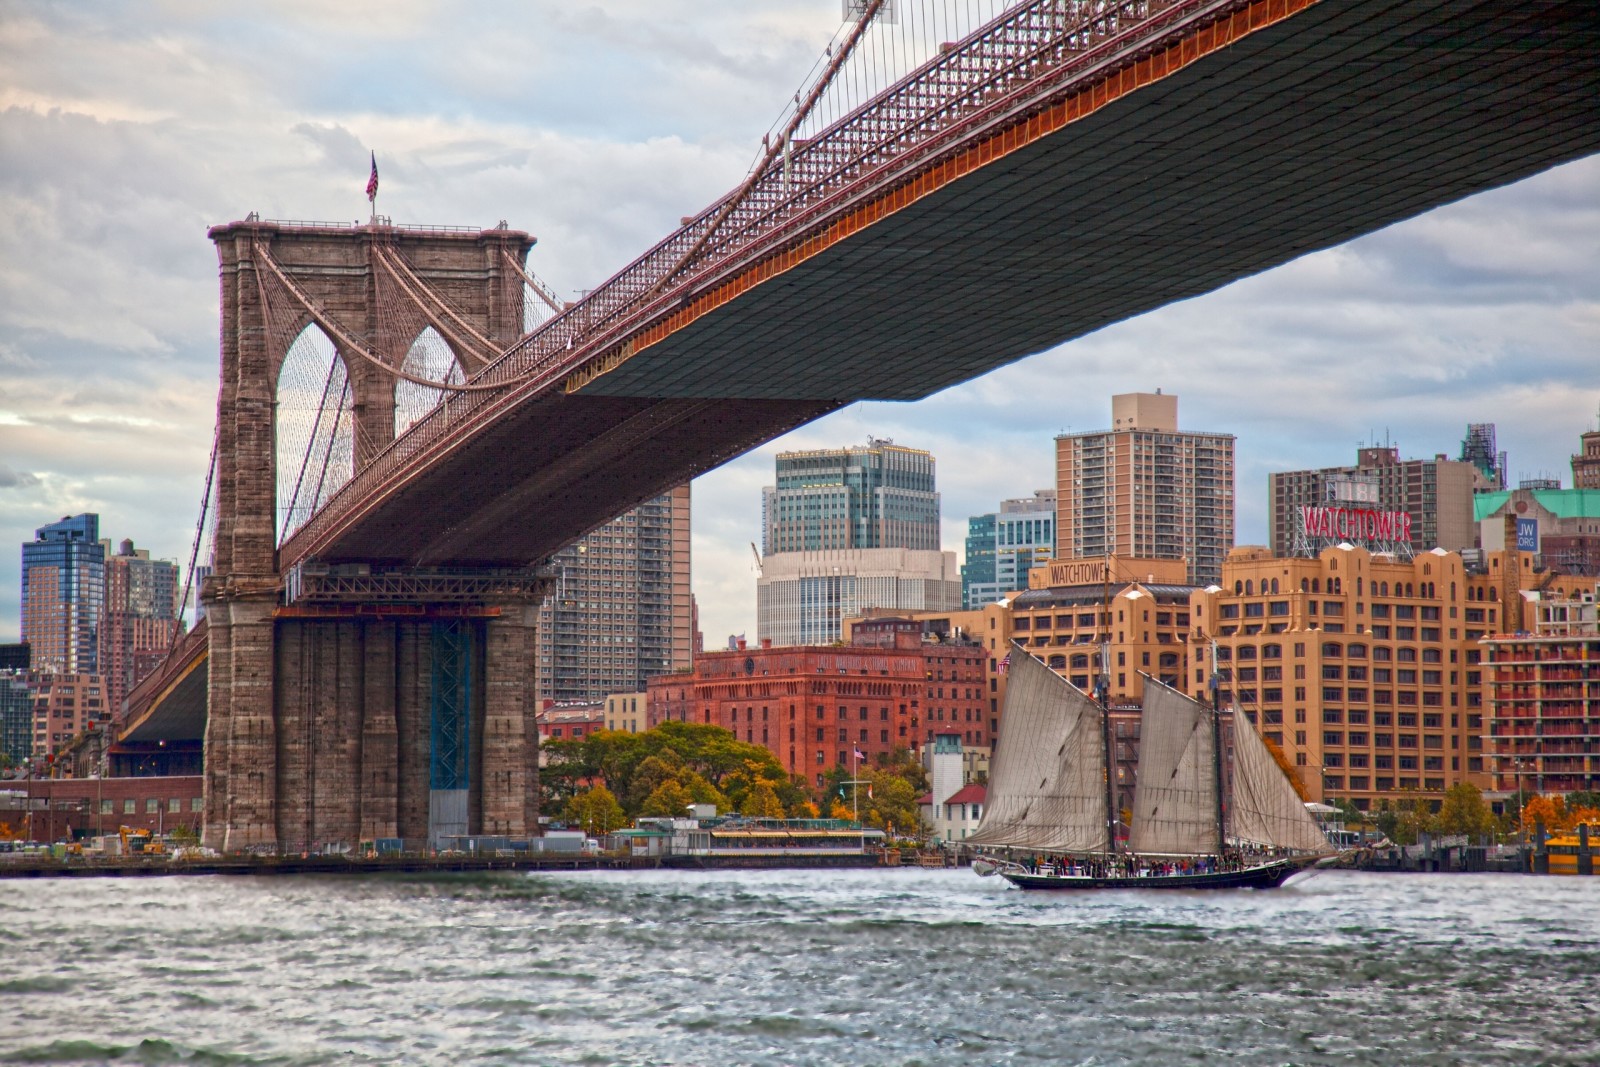 สะพาน, อาคาร, เรือใบ, นิวยอร์ก, แมนฮัตตัน, เมืองนิวยอร์ก, ช่องแคบ, สะพานบรูคลิน